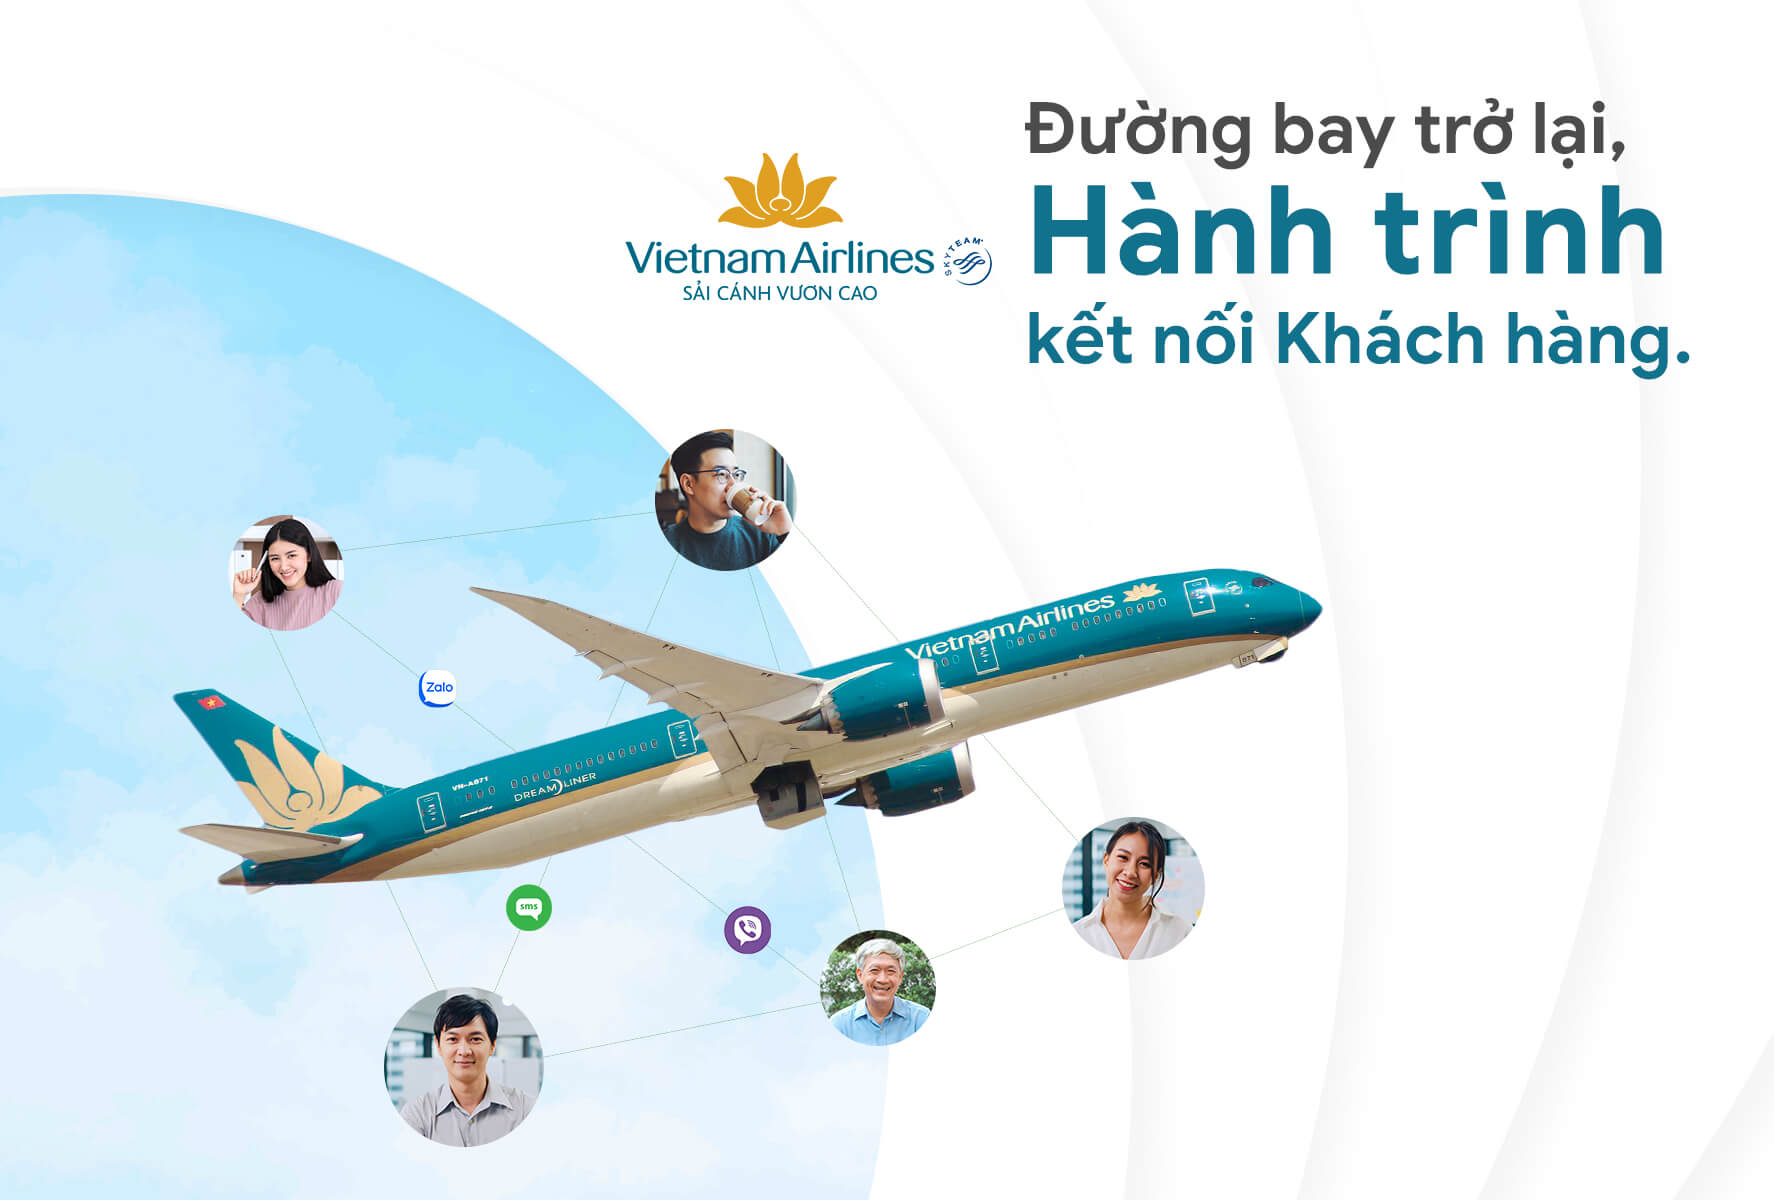 Vietnam Airlines - Thu hẹp khoảng cách đến Khách hàng chỉ bằng 1 dòng tin nhắn